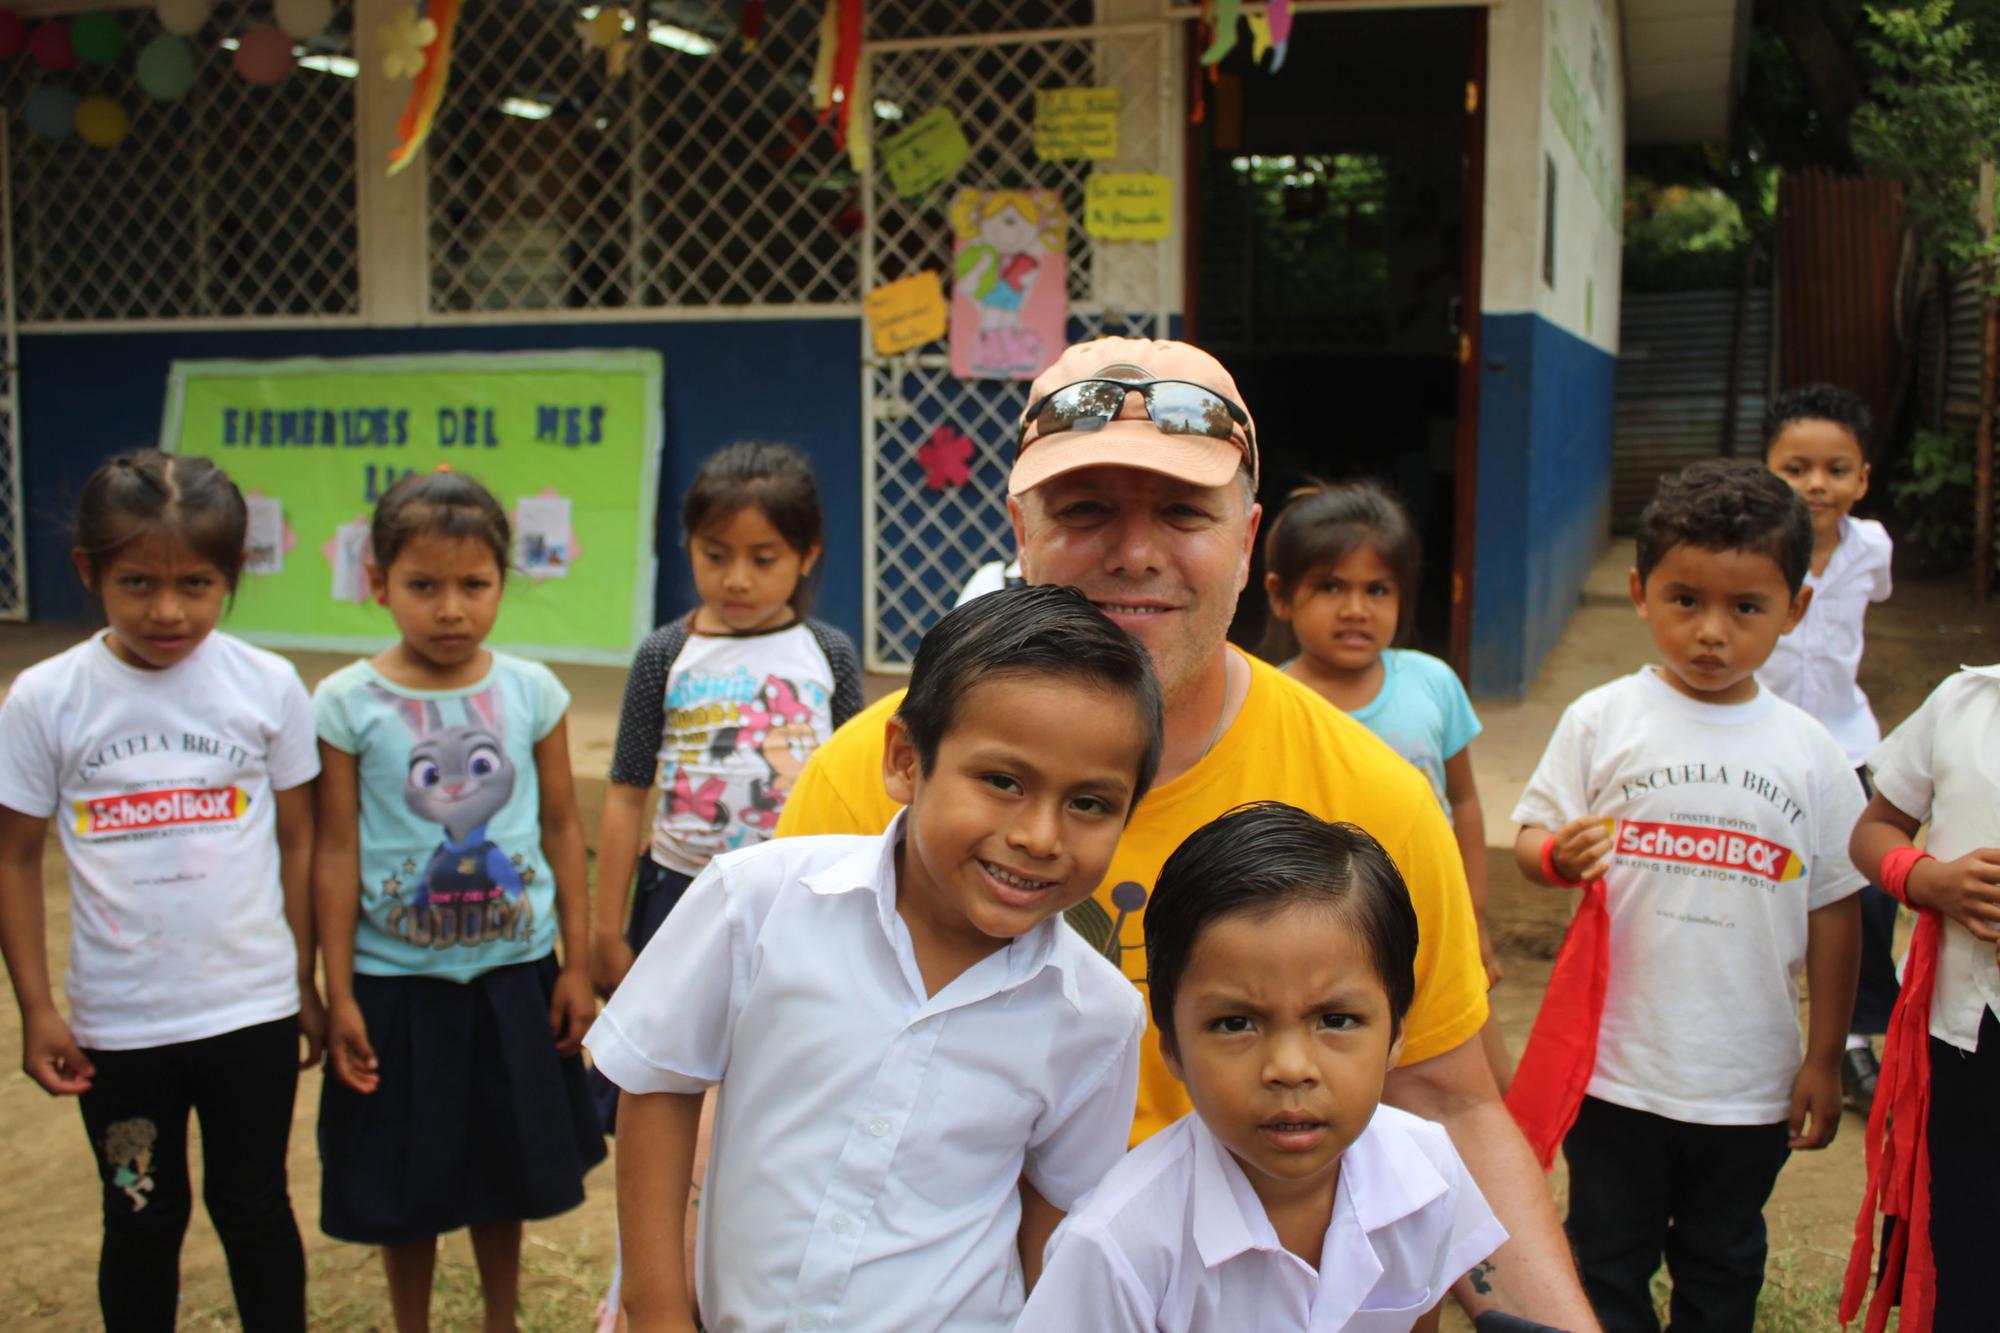 Retired OPP officer builds classroom for children in Nicaragua